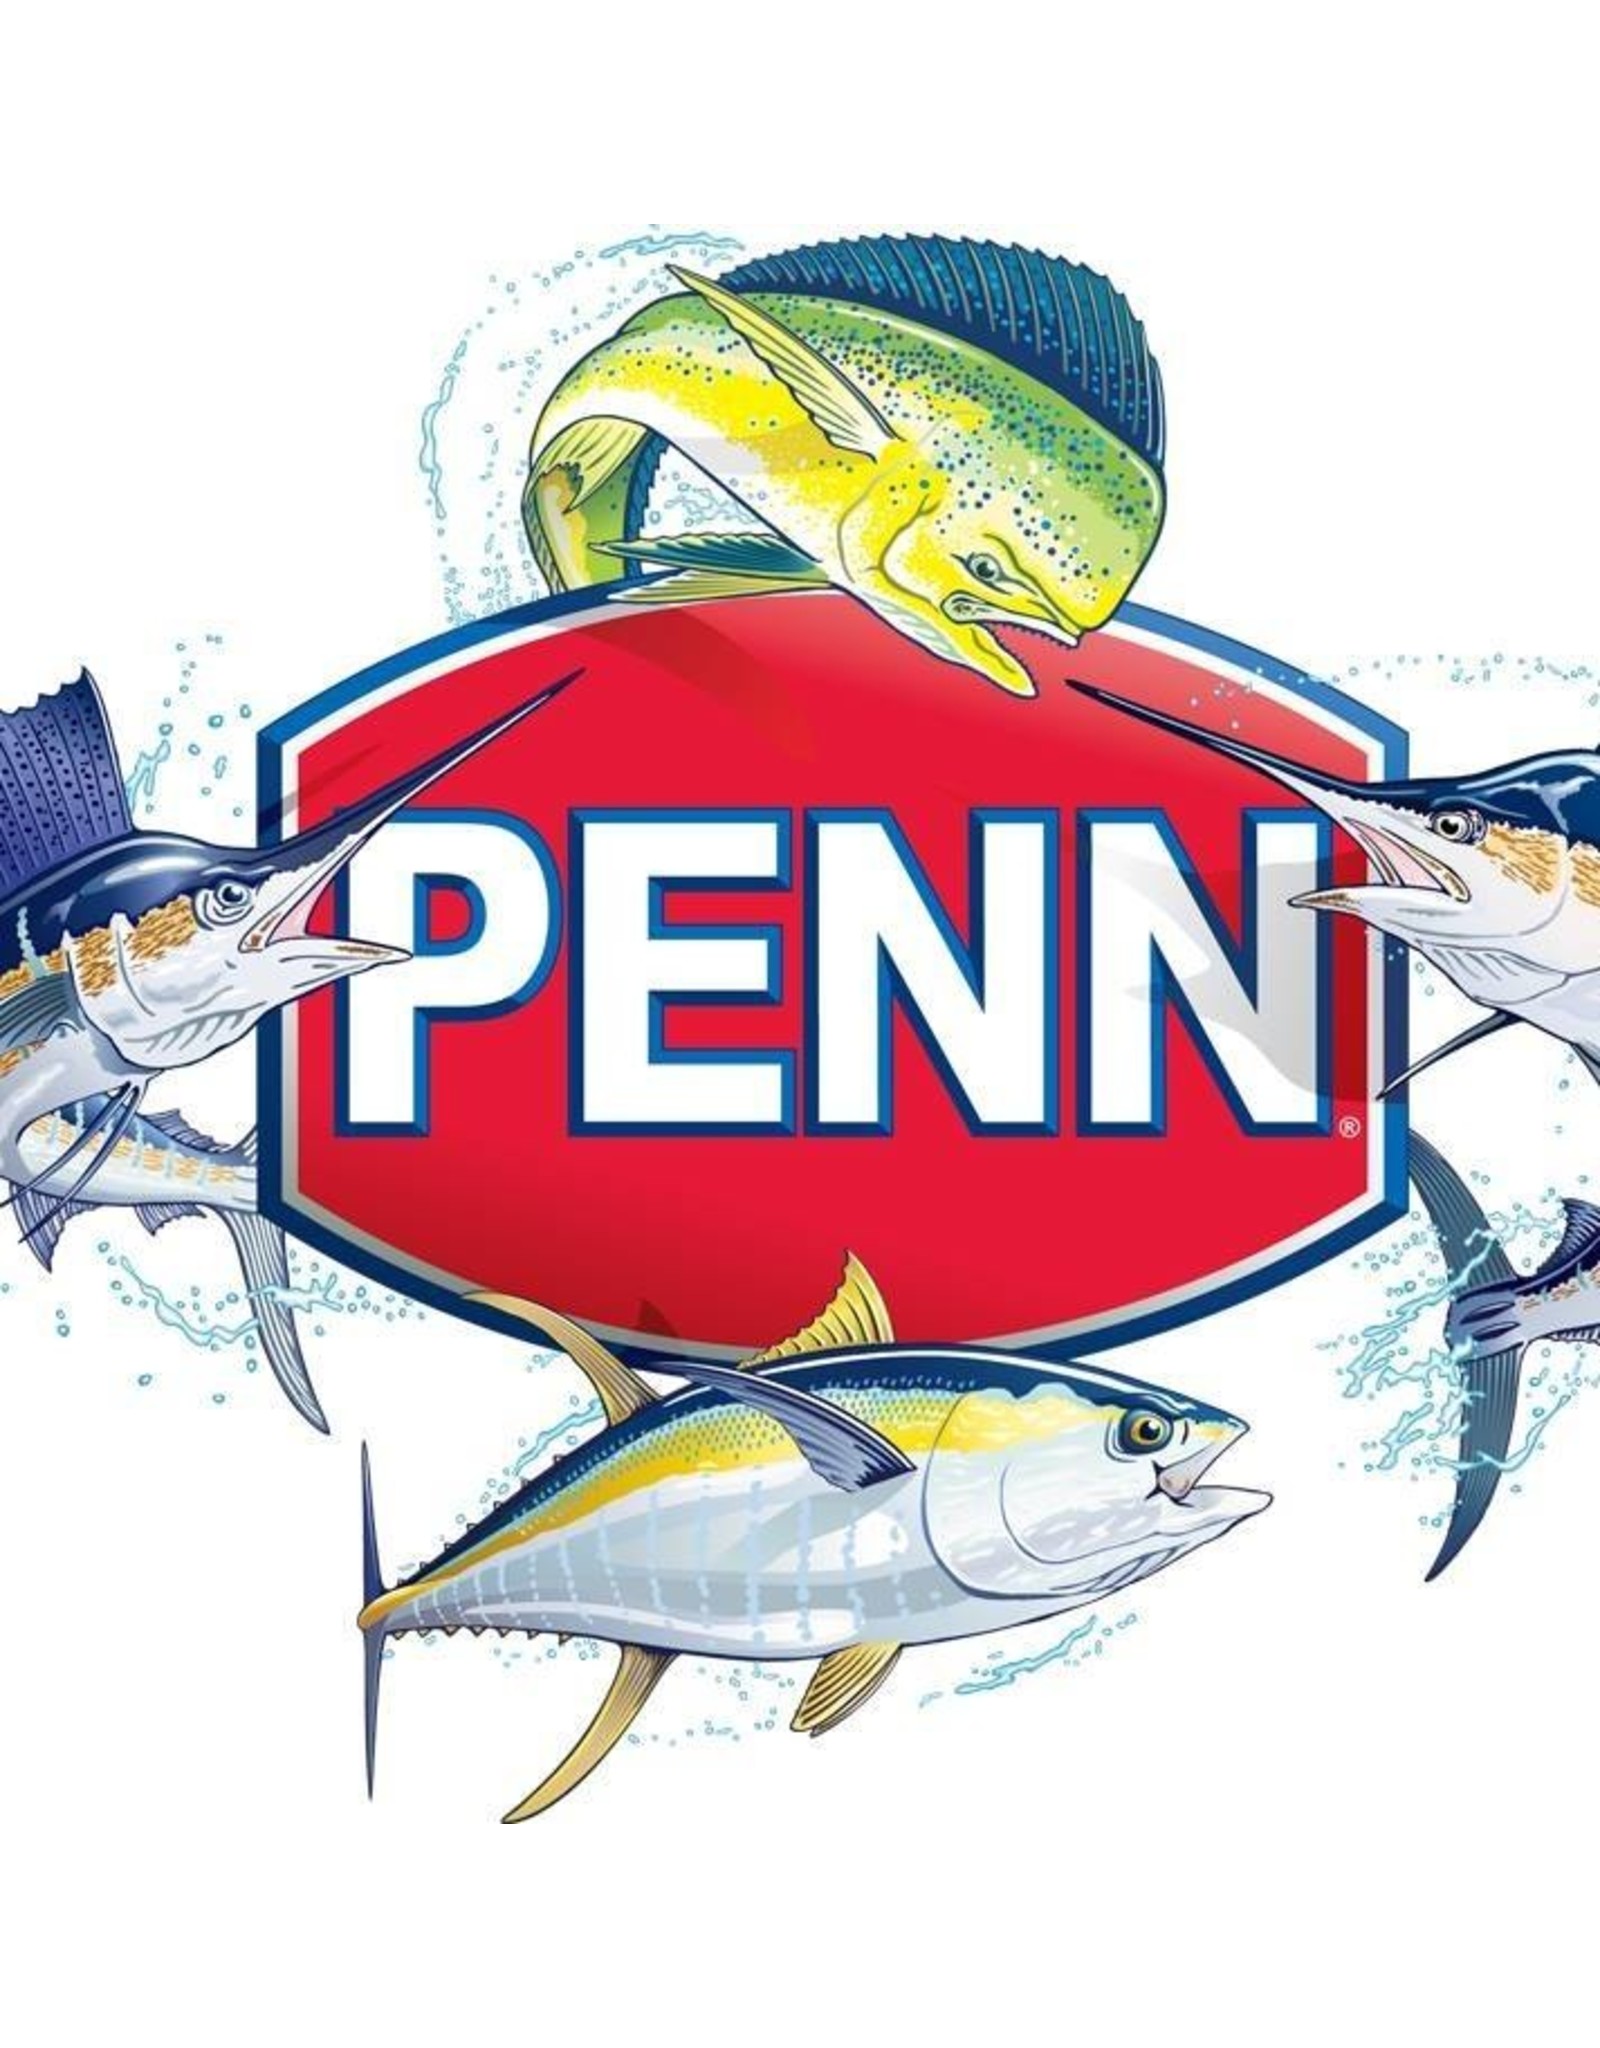 Penn 19-6000  PINION GEAR/NLA